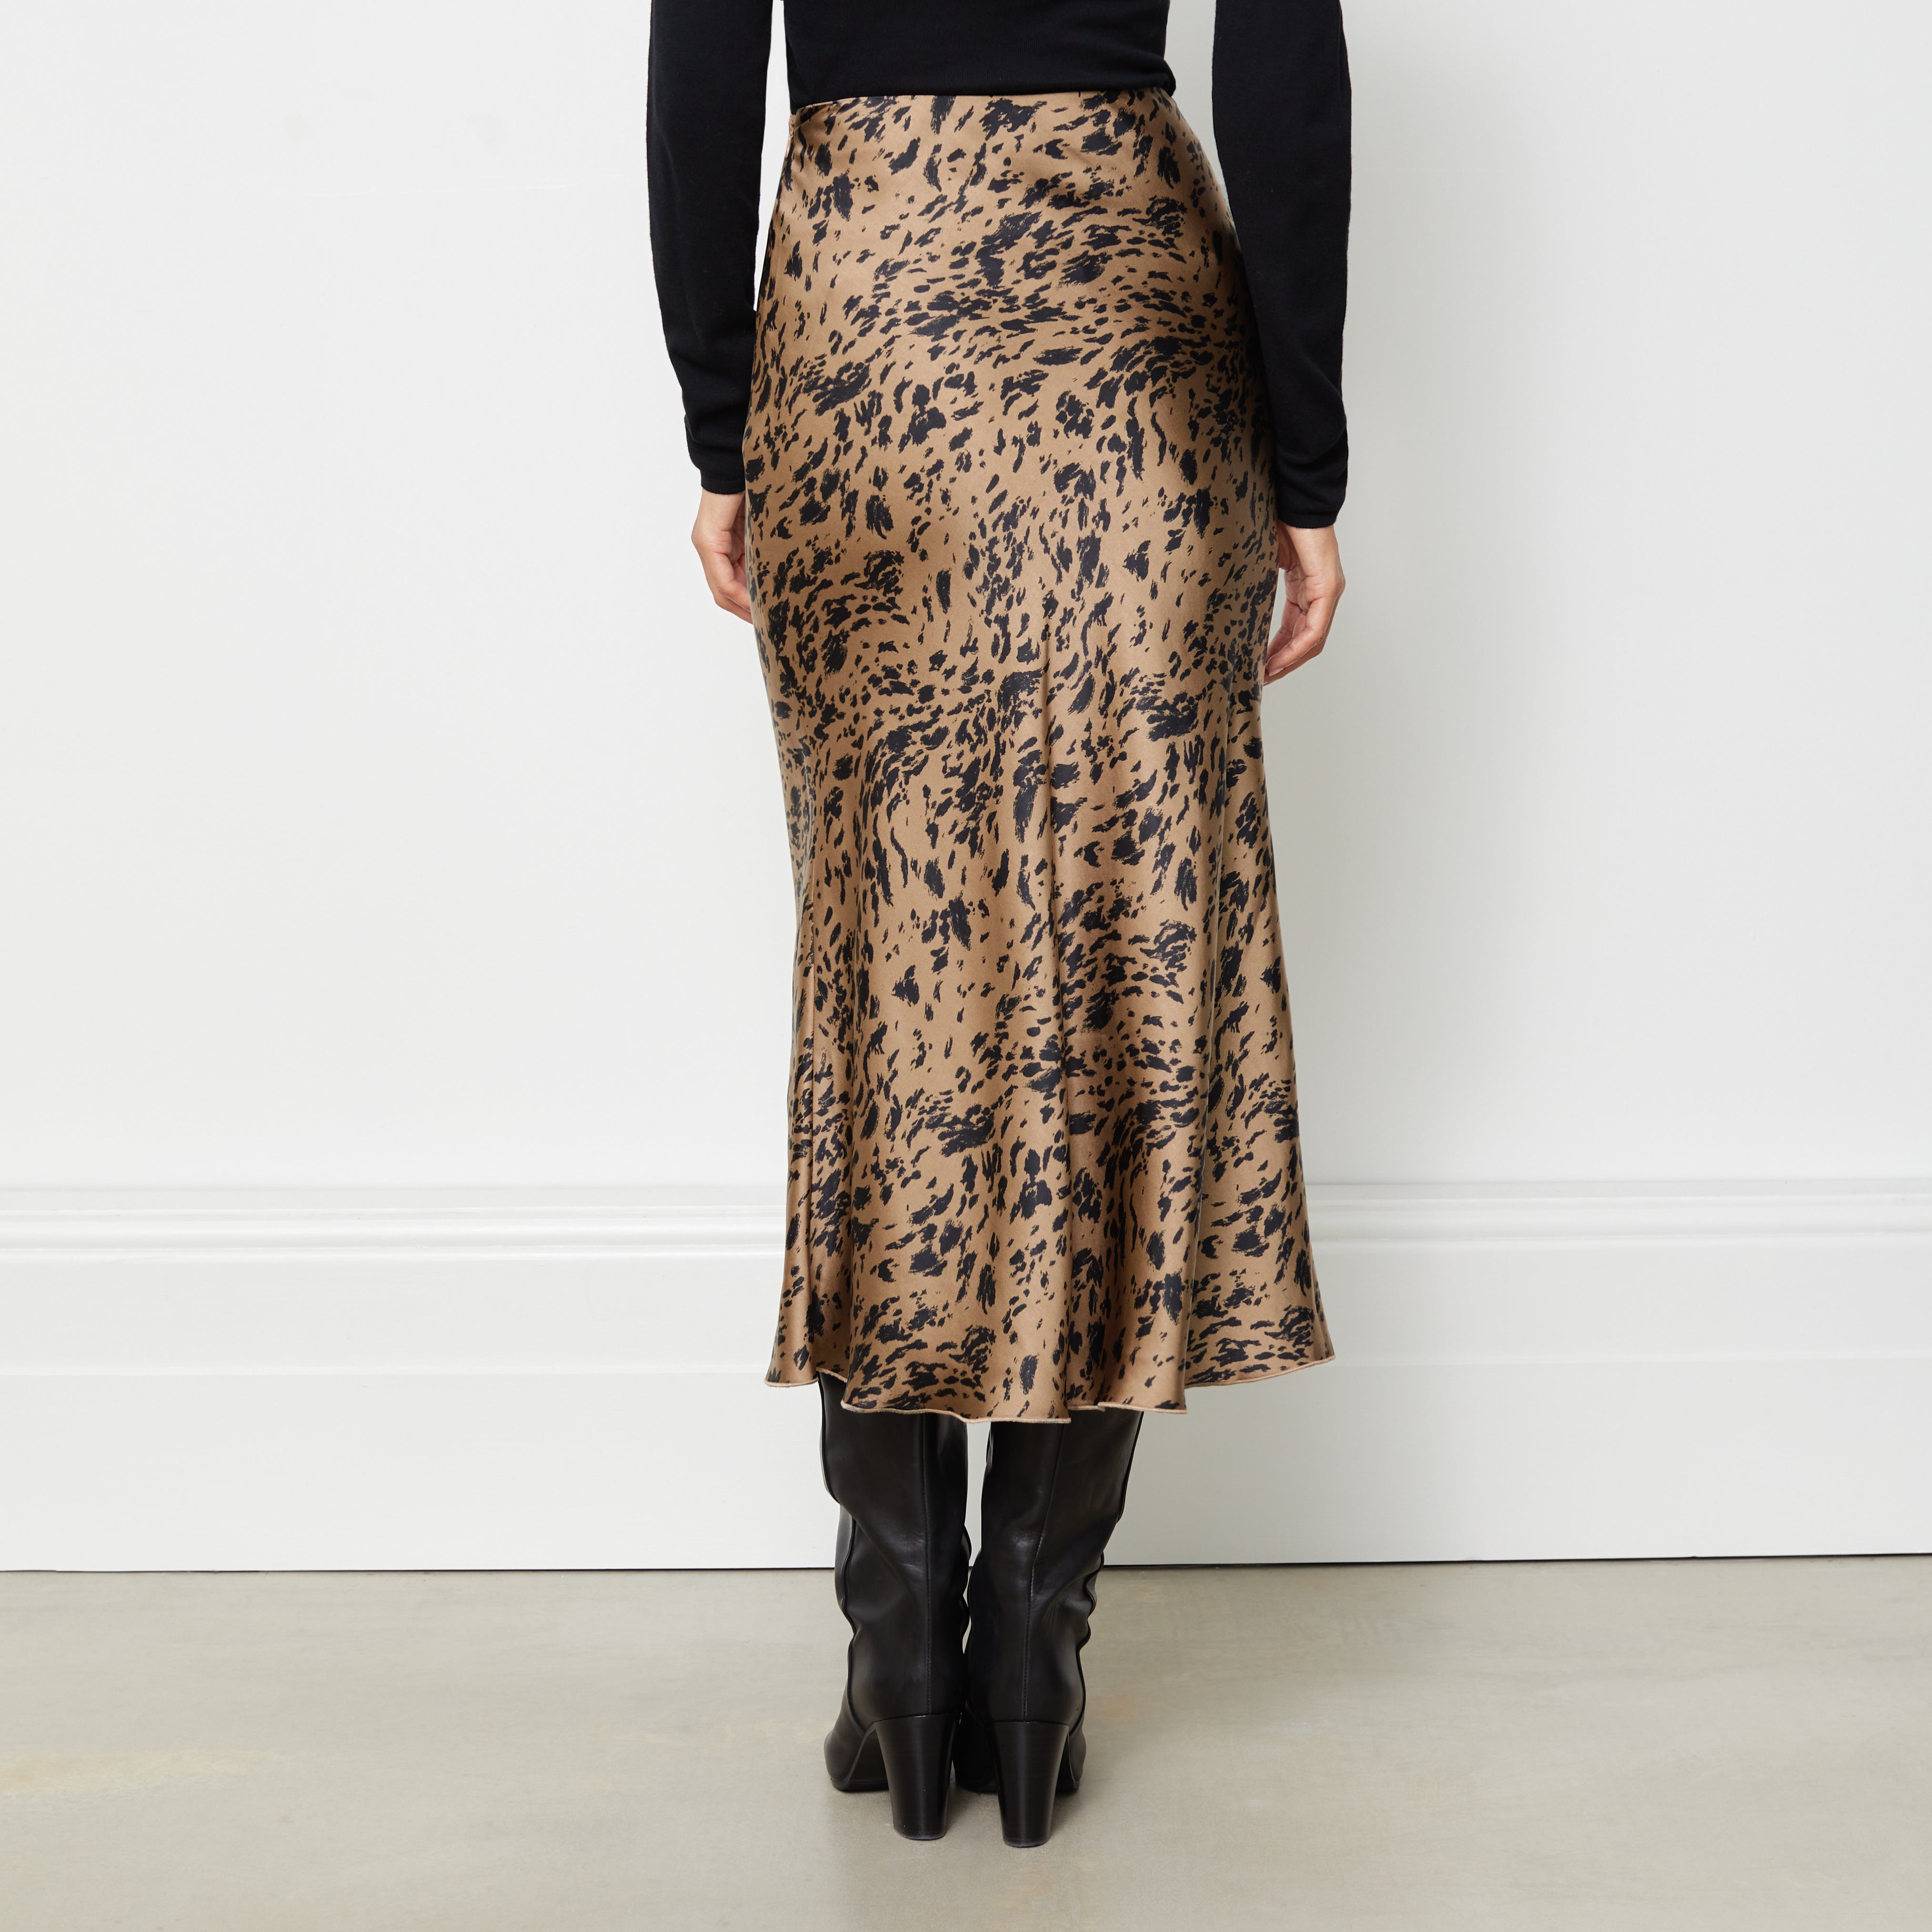 Abstract Animal Satin Skirt